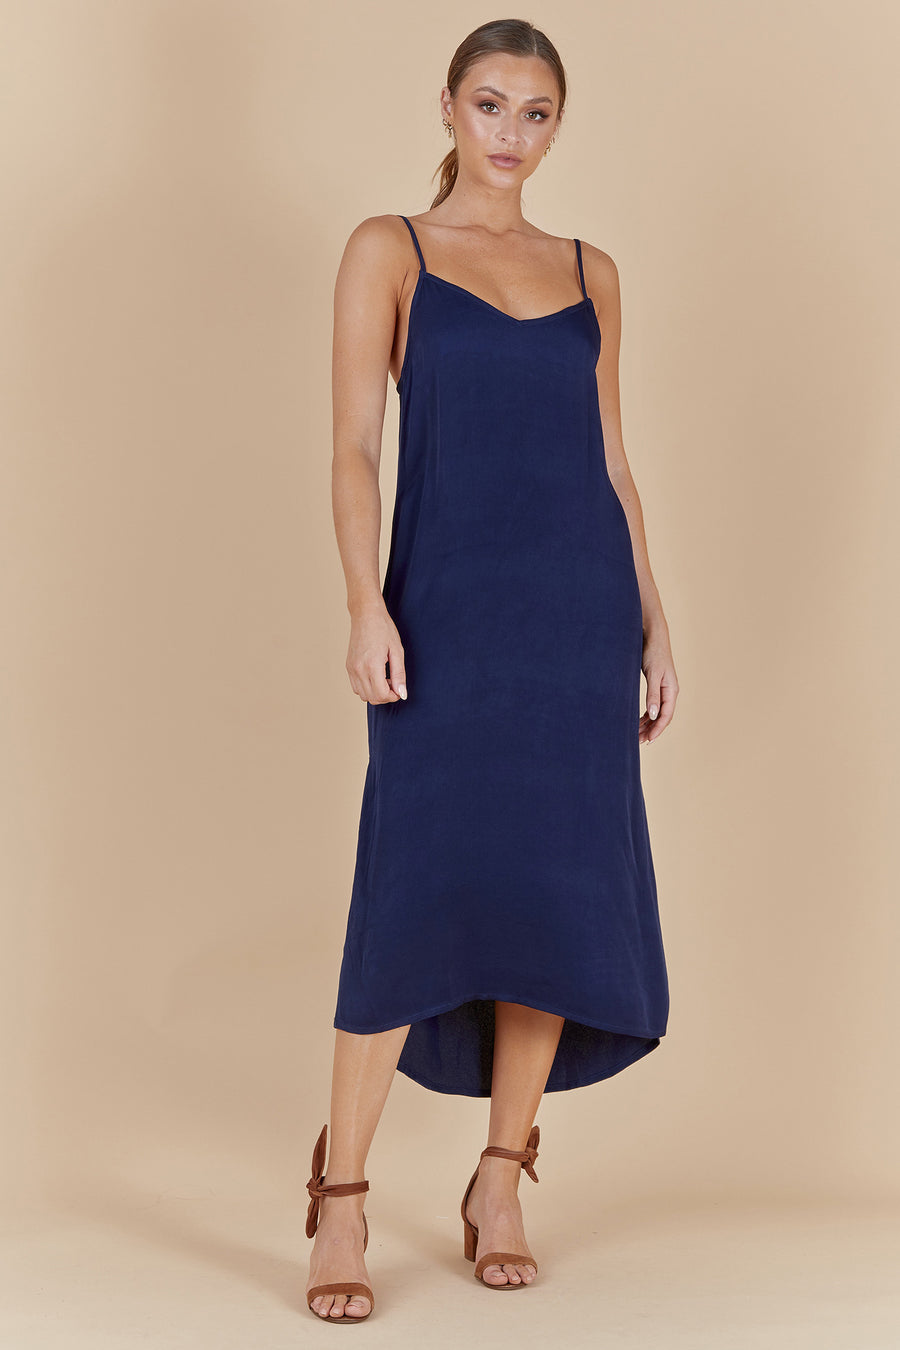 PALOMA SLIP DRESS - BLUE NAVAL